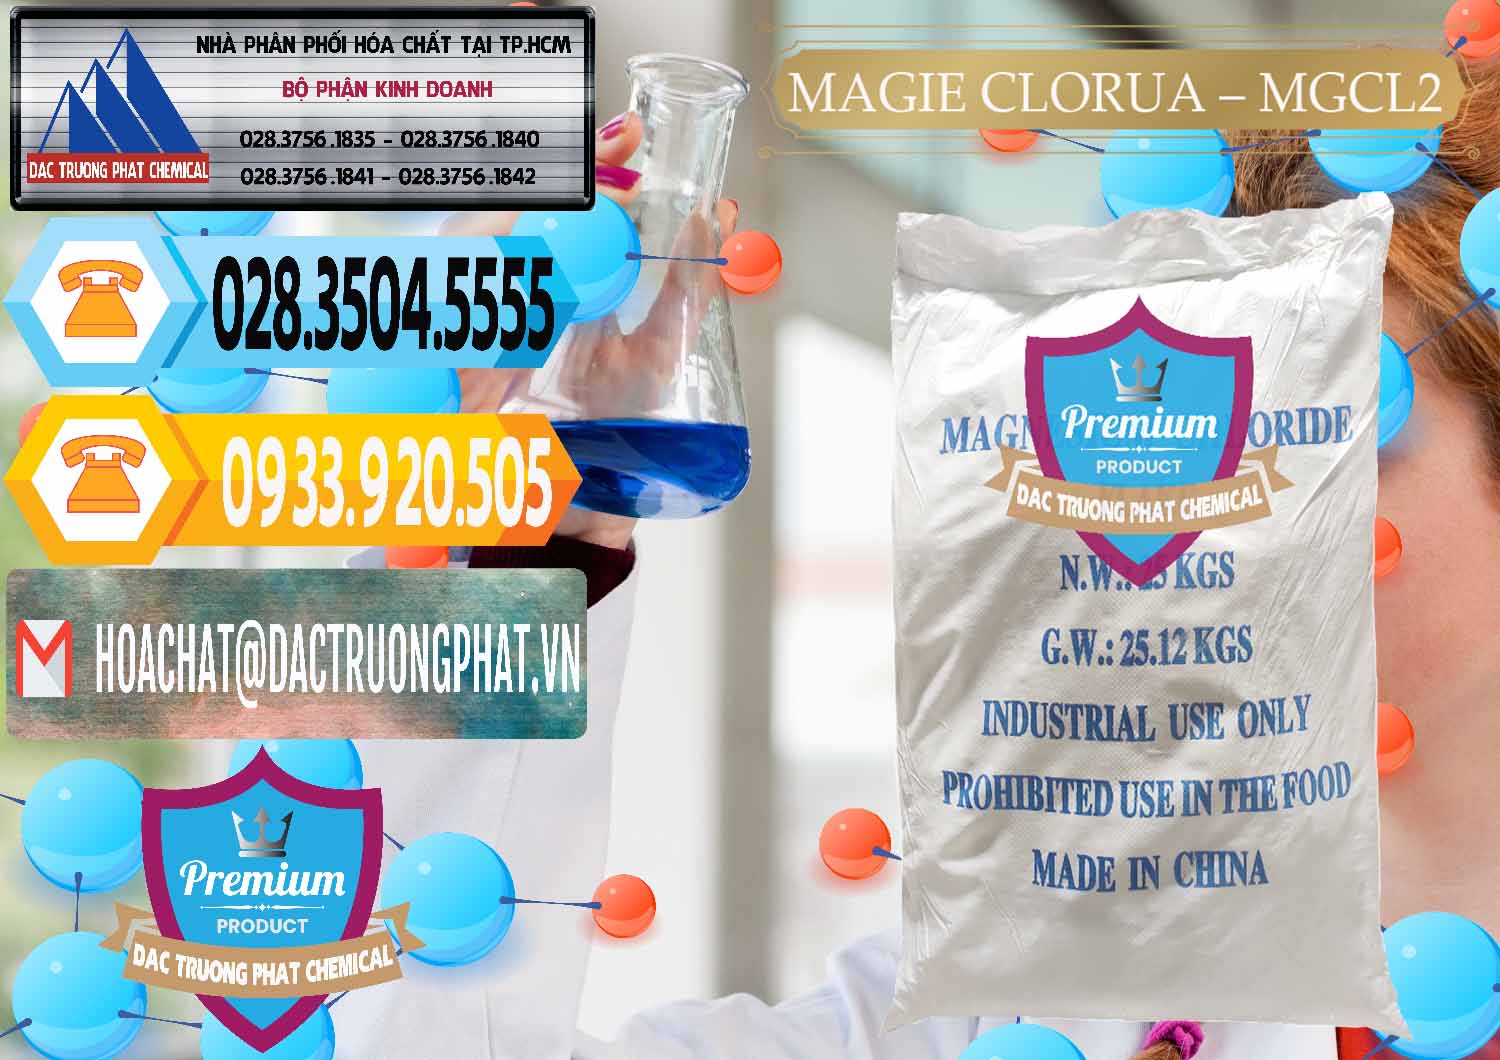 Nơi bán & phân phối Magie Clorua – MGCL2 96% Dạng Vảy Trung Quốc China - 0091 - Đơn vị chuyên nhập khẩu ( cung cấp ) hóa chất tại TP.HCM - hoachattayrua.net